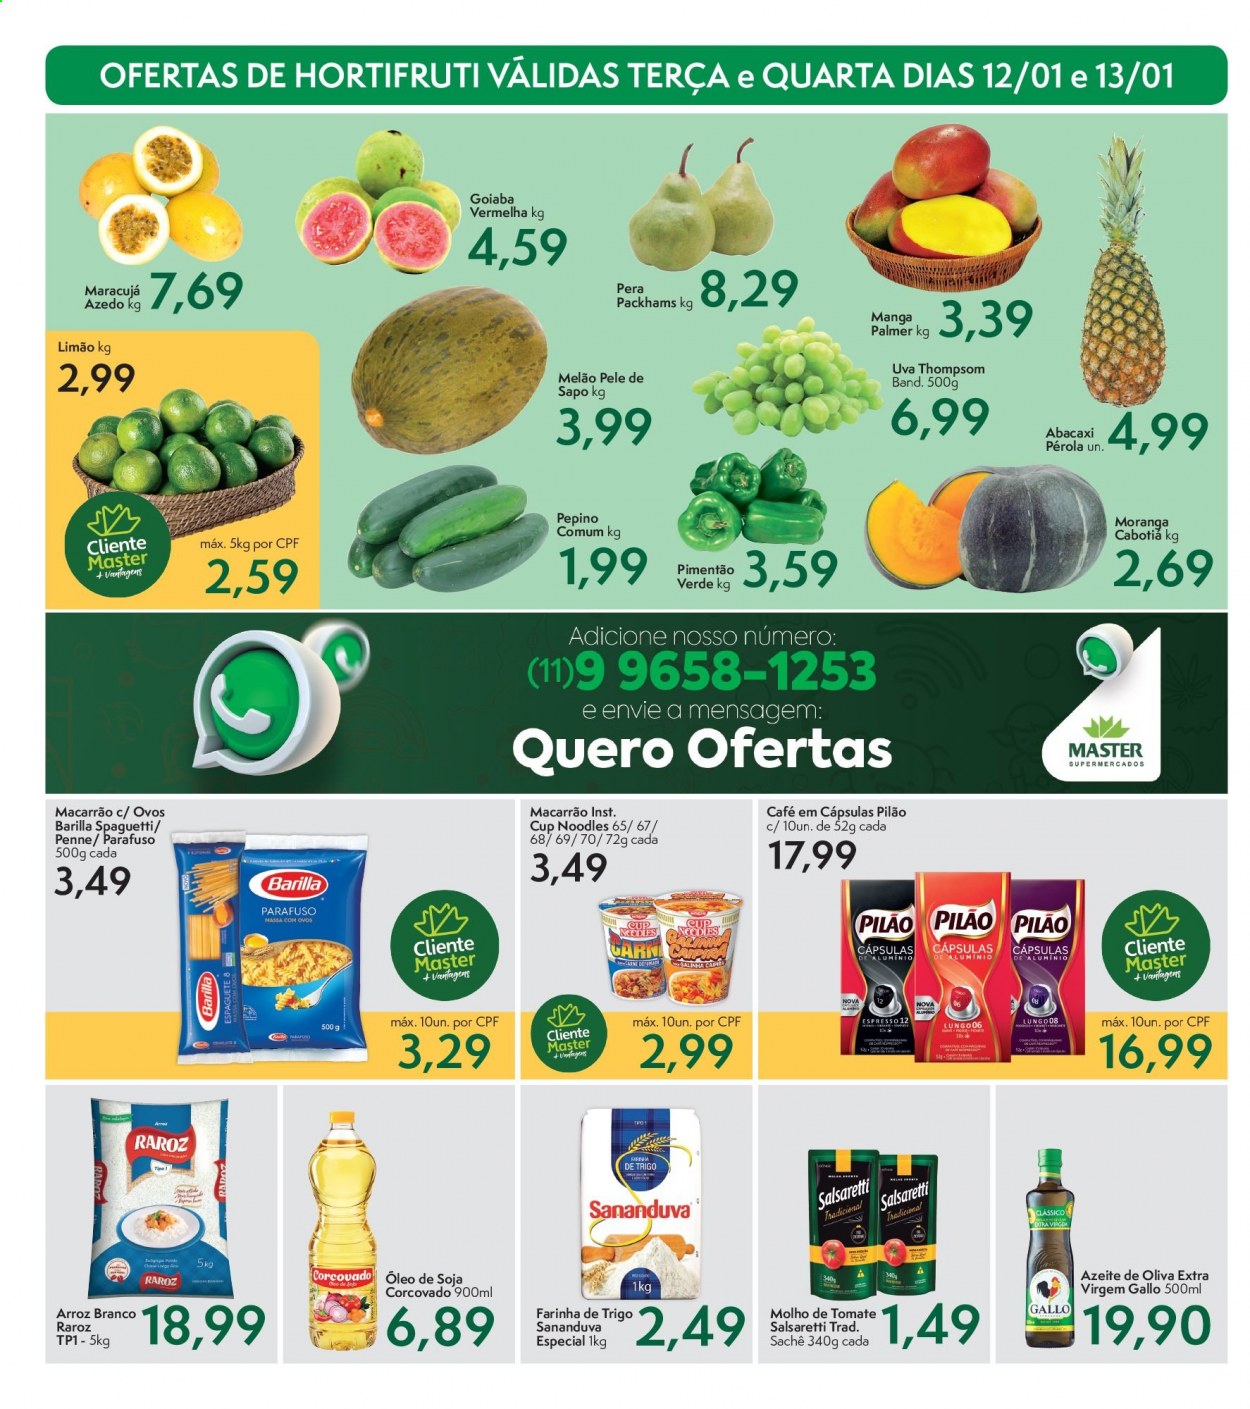 Encarte Master Supermercados  - 12.01.2021 - 14.01.2021.